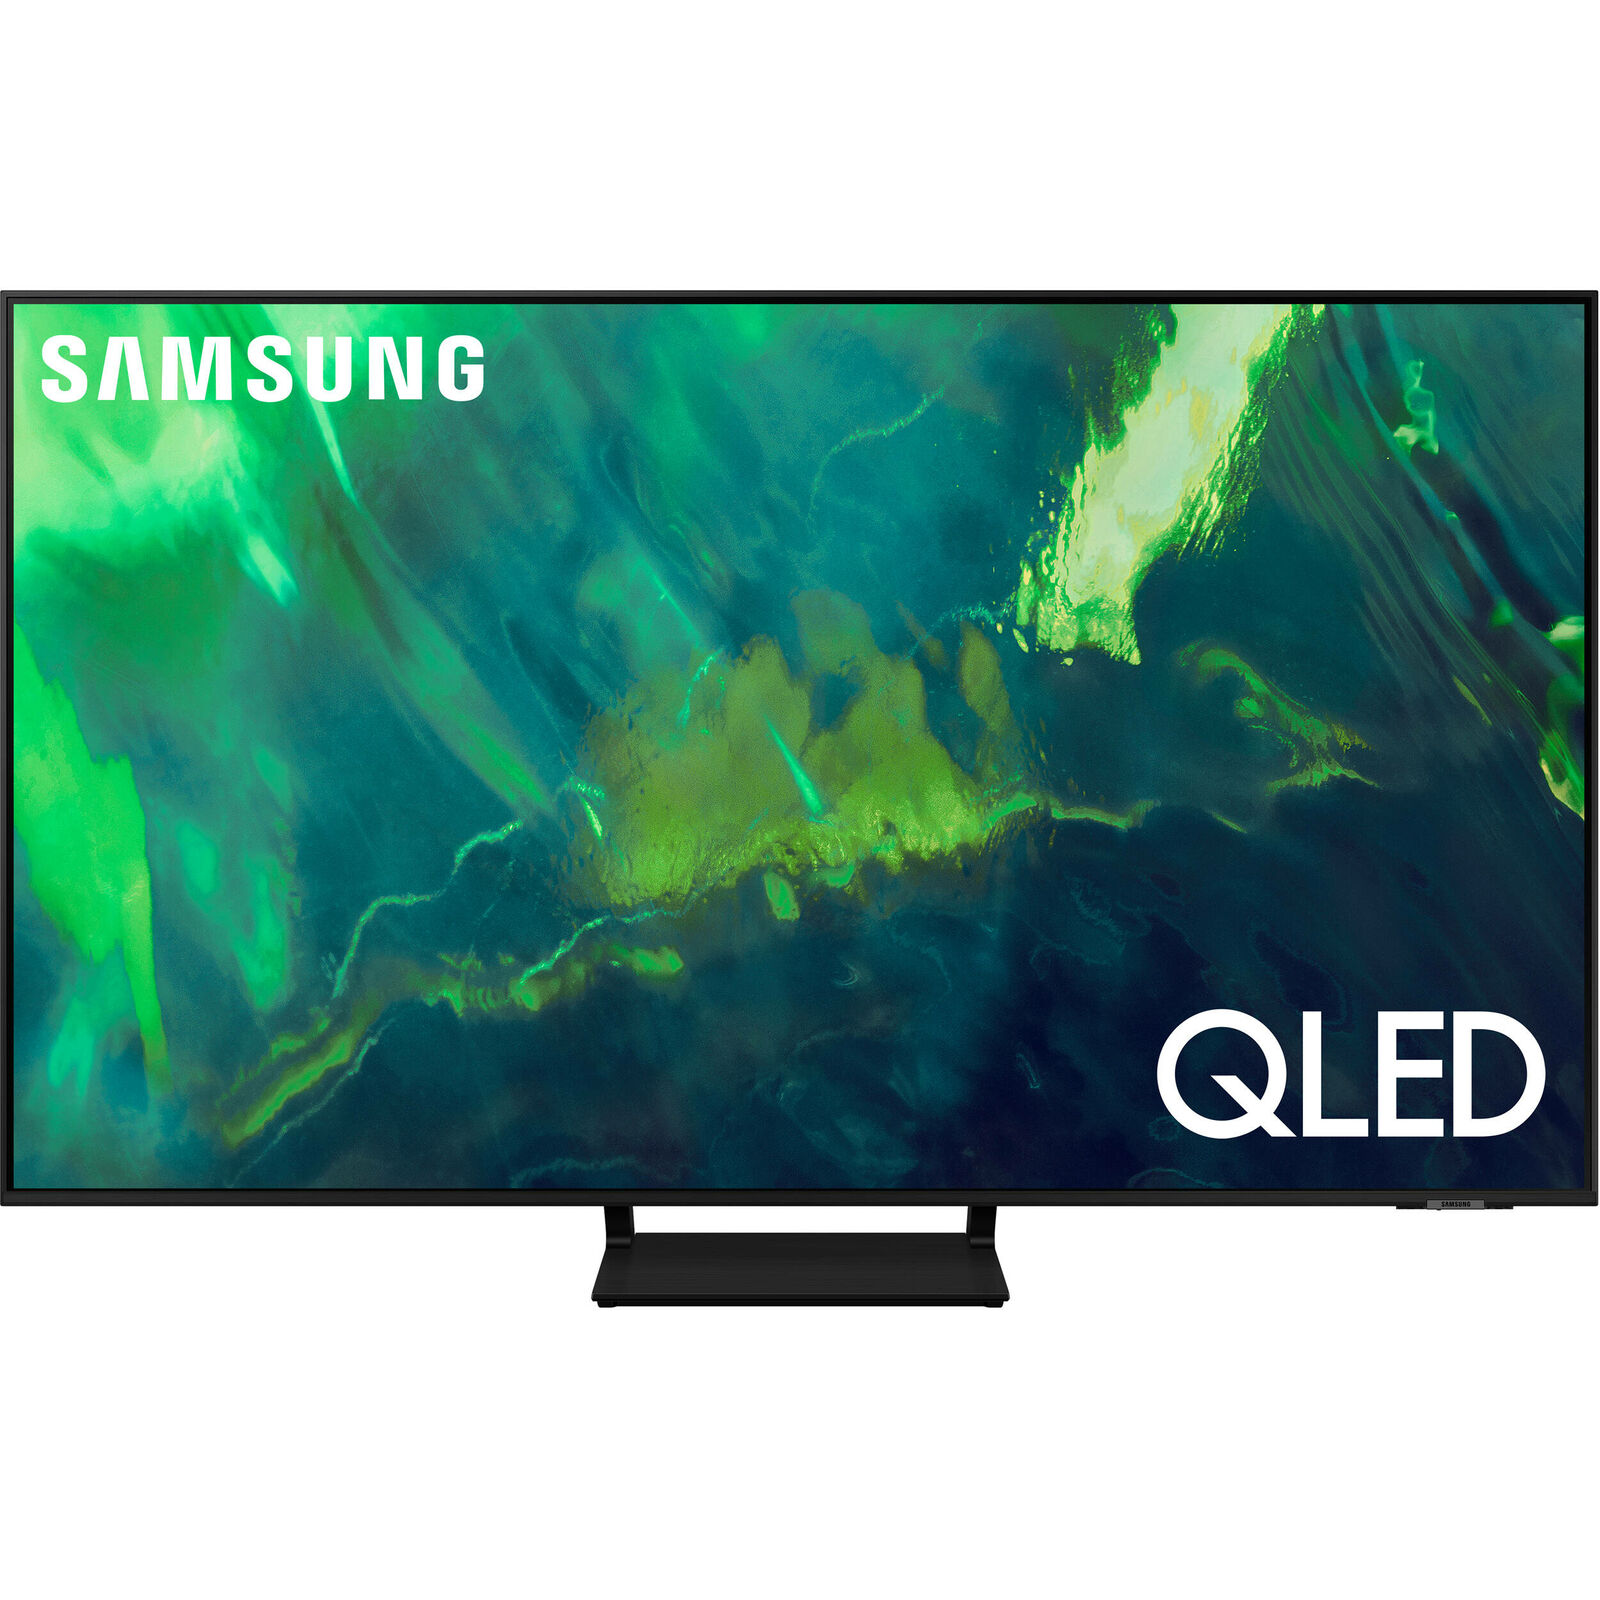 Samsung Q70A 75" QLED 4K Ultra HD HDR Smart TV - 2021 Model *QN75Q70A